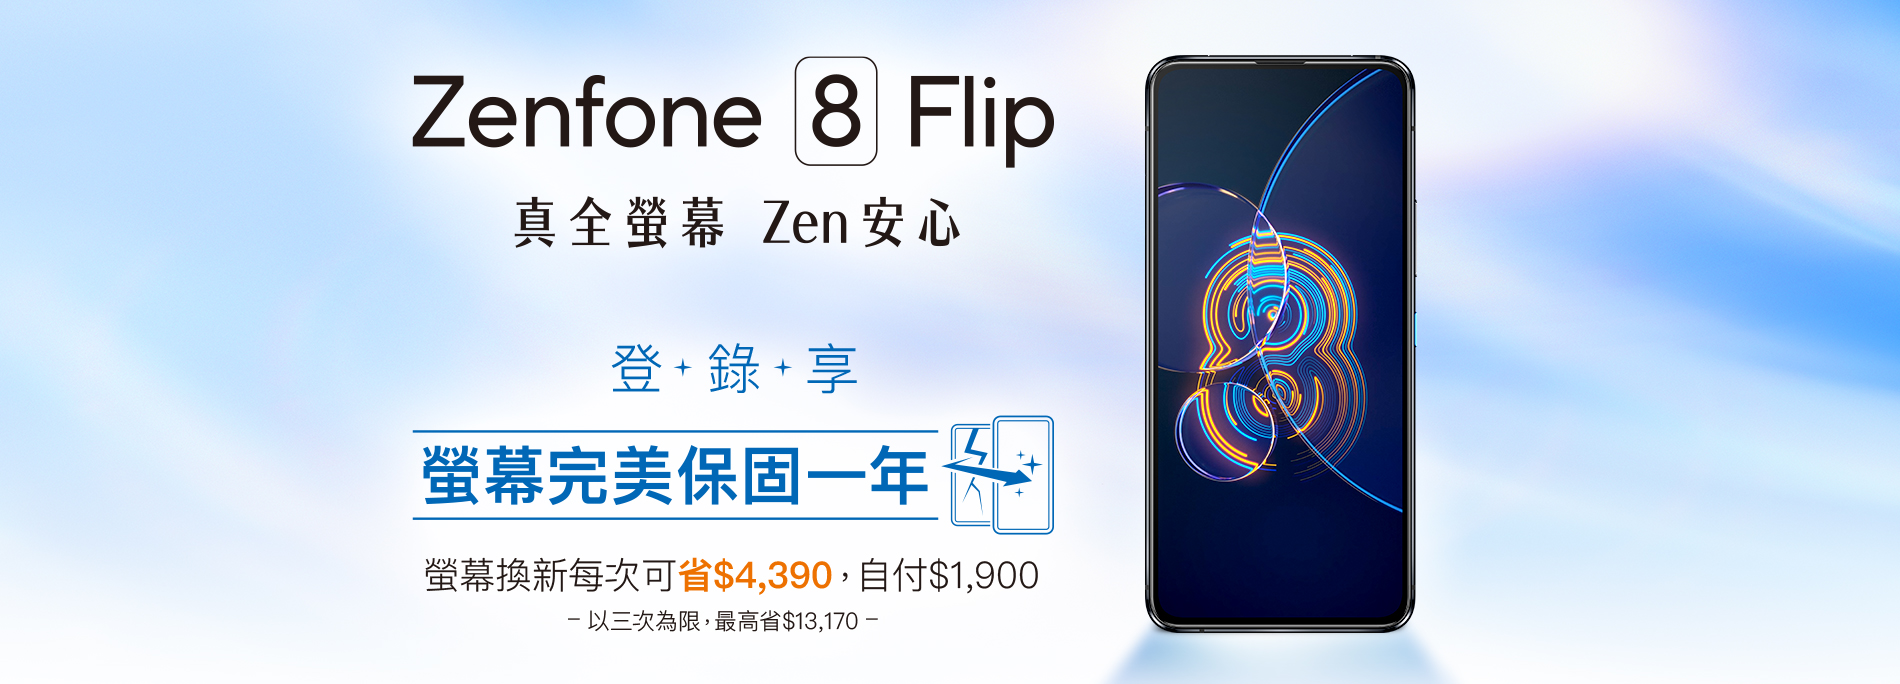 【真全螢幕 Zen安心】好評延長！Zenfone 8 Flip 登錄送螢幕完美保固一年 螢幕換新每次可省 $4,390